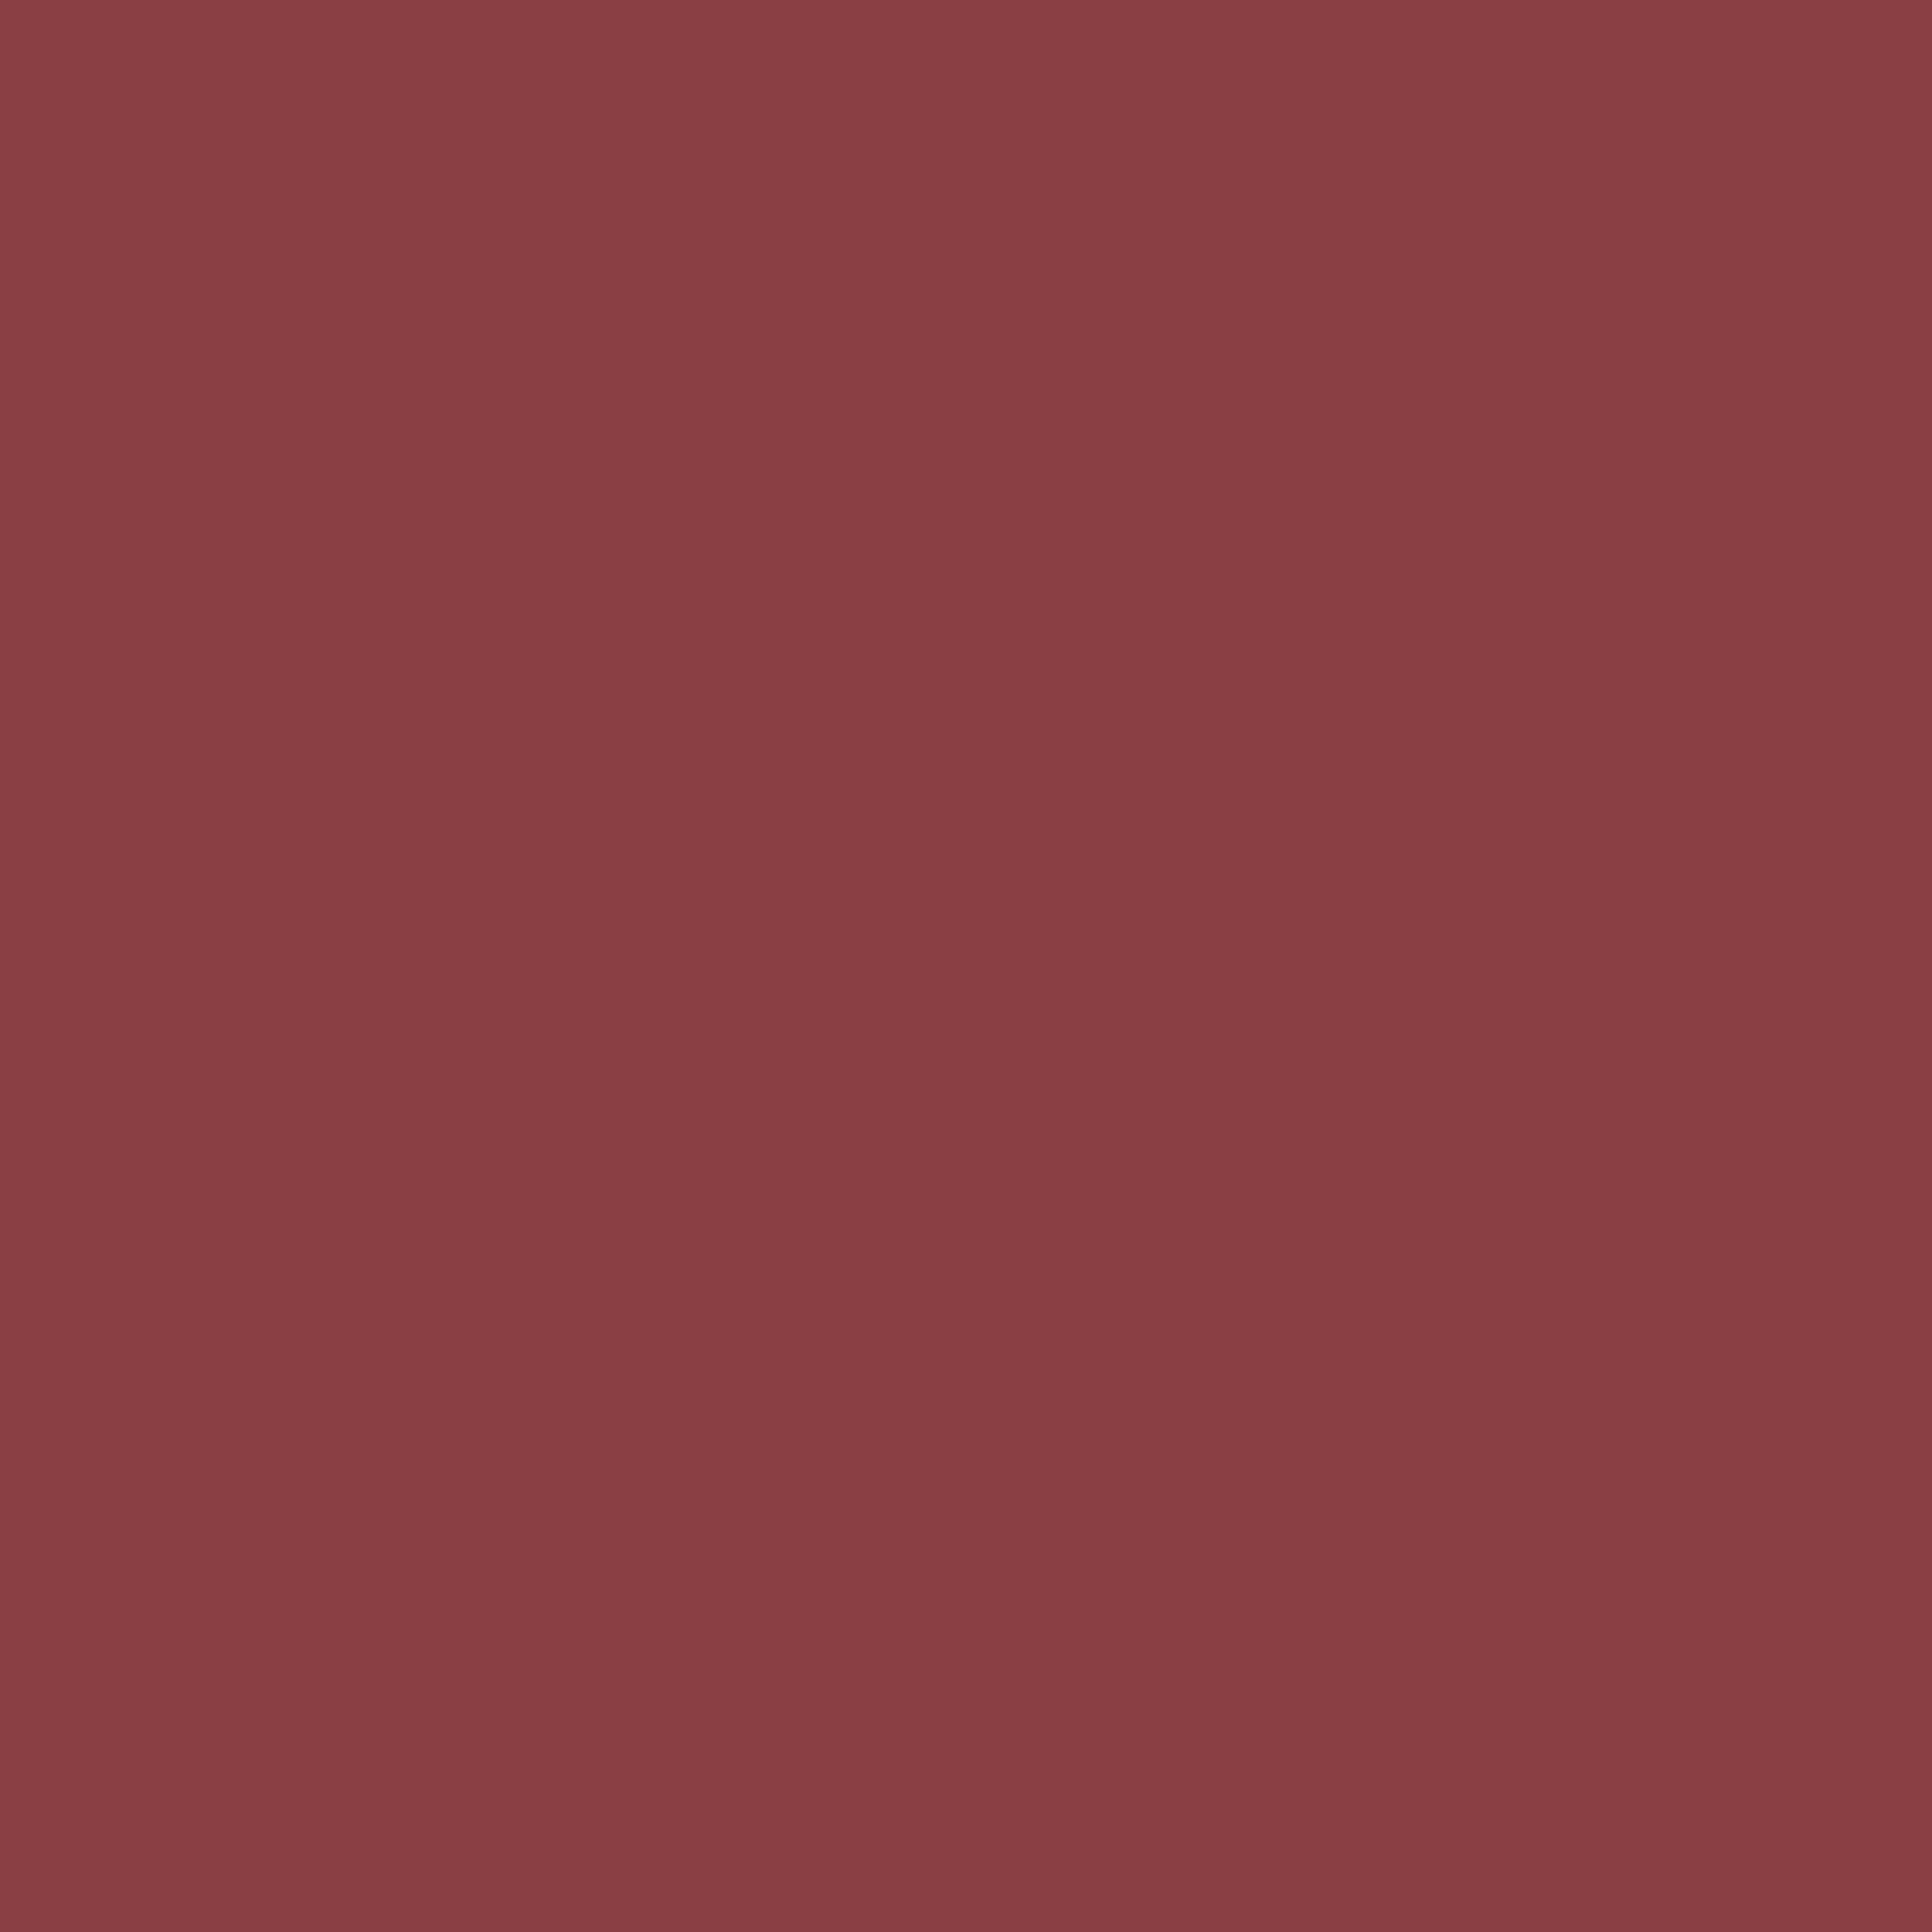 2048x2048 Cordovan Solid Color Background